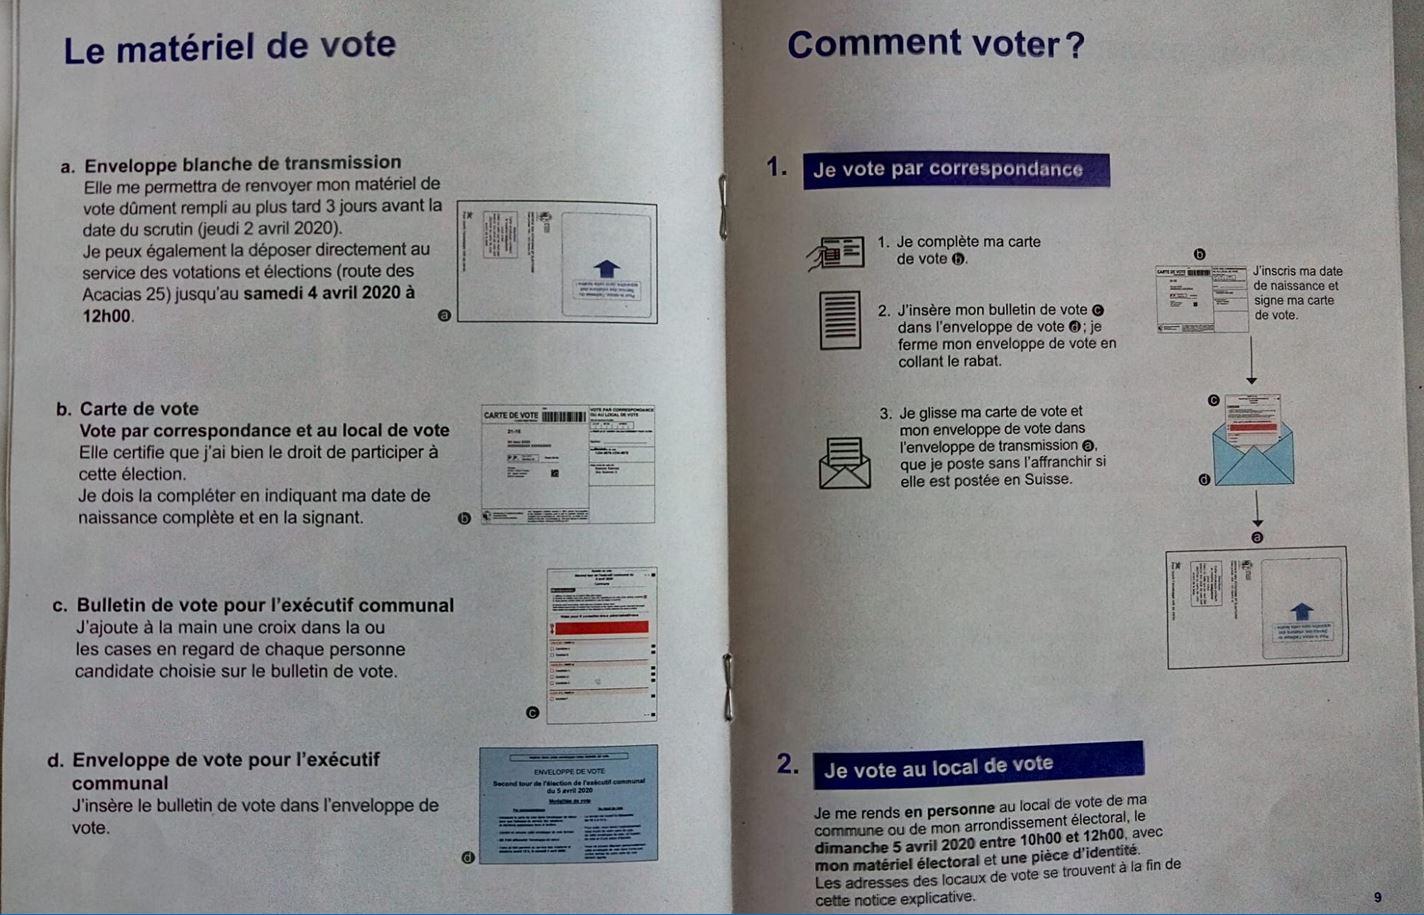 Le matériel de vote qui autorise les électeurs genevois à se rendre au local de vote le 5 avril 2020. [RTS - Raphaël Leroy]